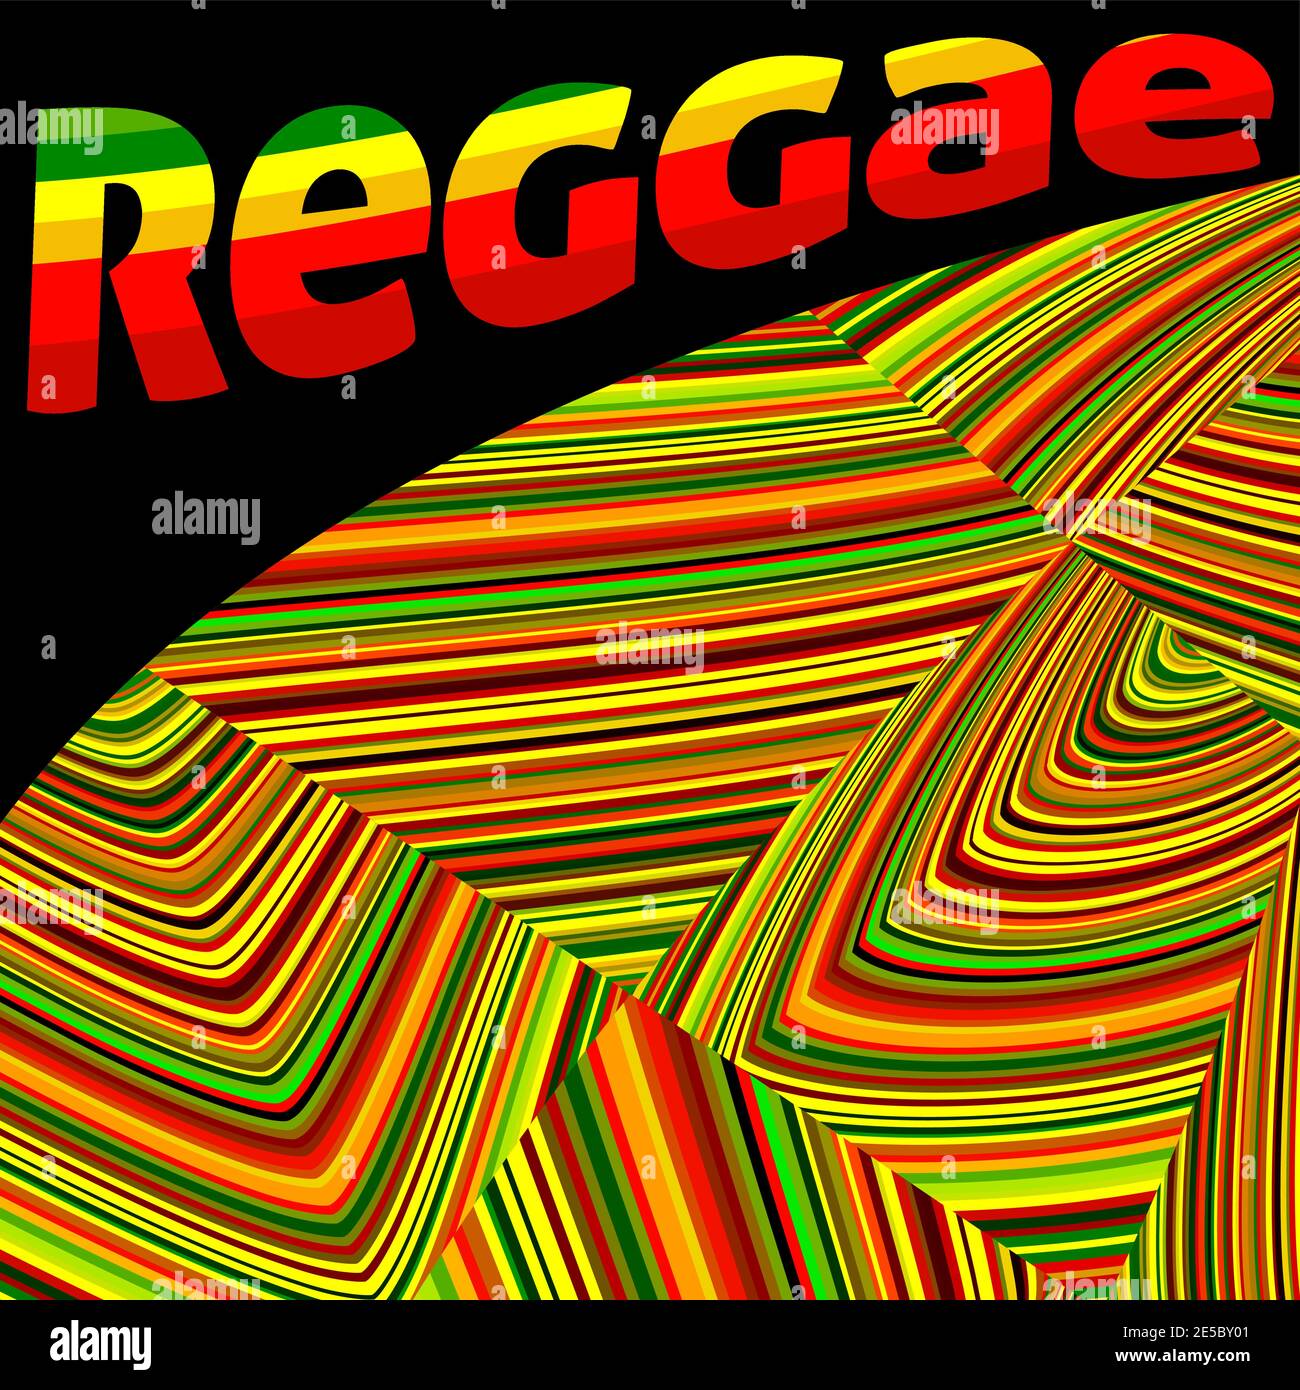 Abstrakte quadratische Vorlage im Reggae-Stil mit roten, gelben und grünen Streifen auf einem schwarzen. Vektorgrafik Hintergrund Stock Vektor